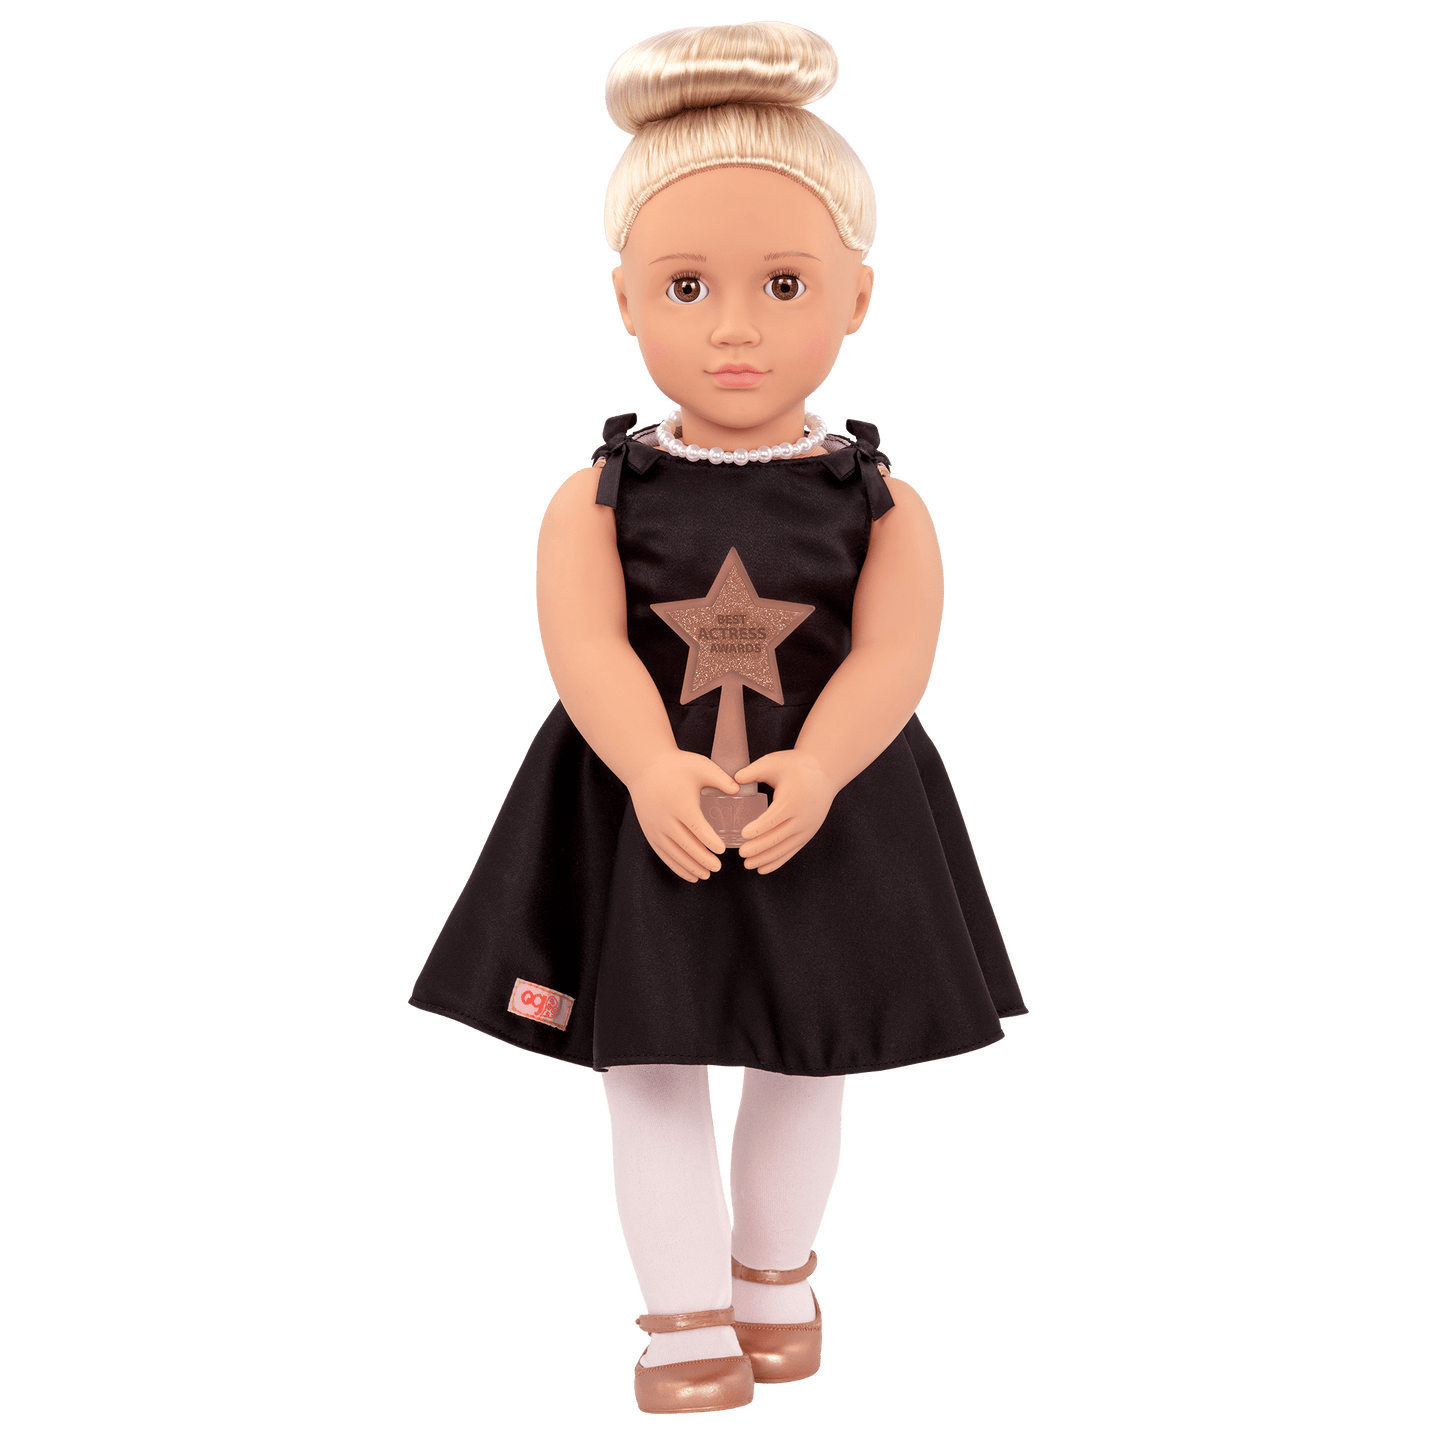 Our Generation - Doll Rafaella